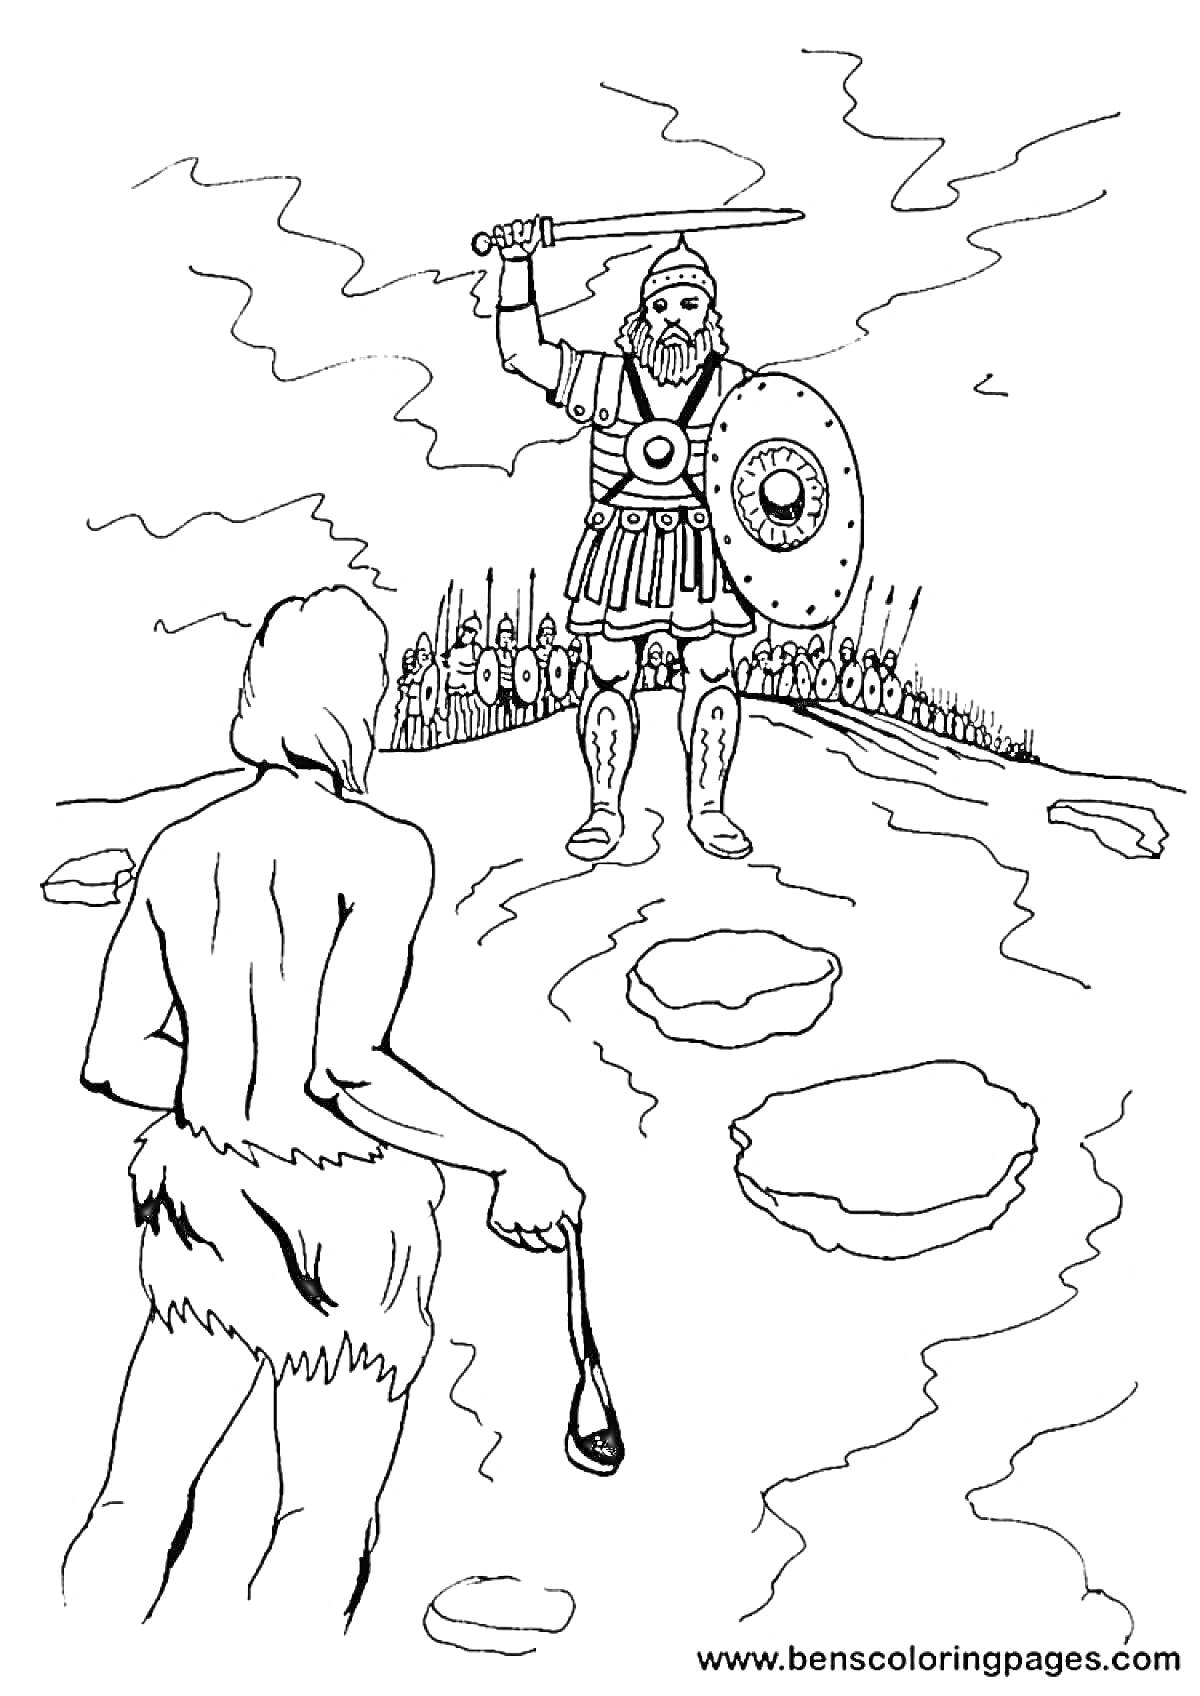 Раскраска Давид и Голиаф - молодой человек со спутанной одеждой и пращой в руке, против бронированного воина с мечом и щитом, стоят друг напротив друга на каменистом поле с войском на заднем плане